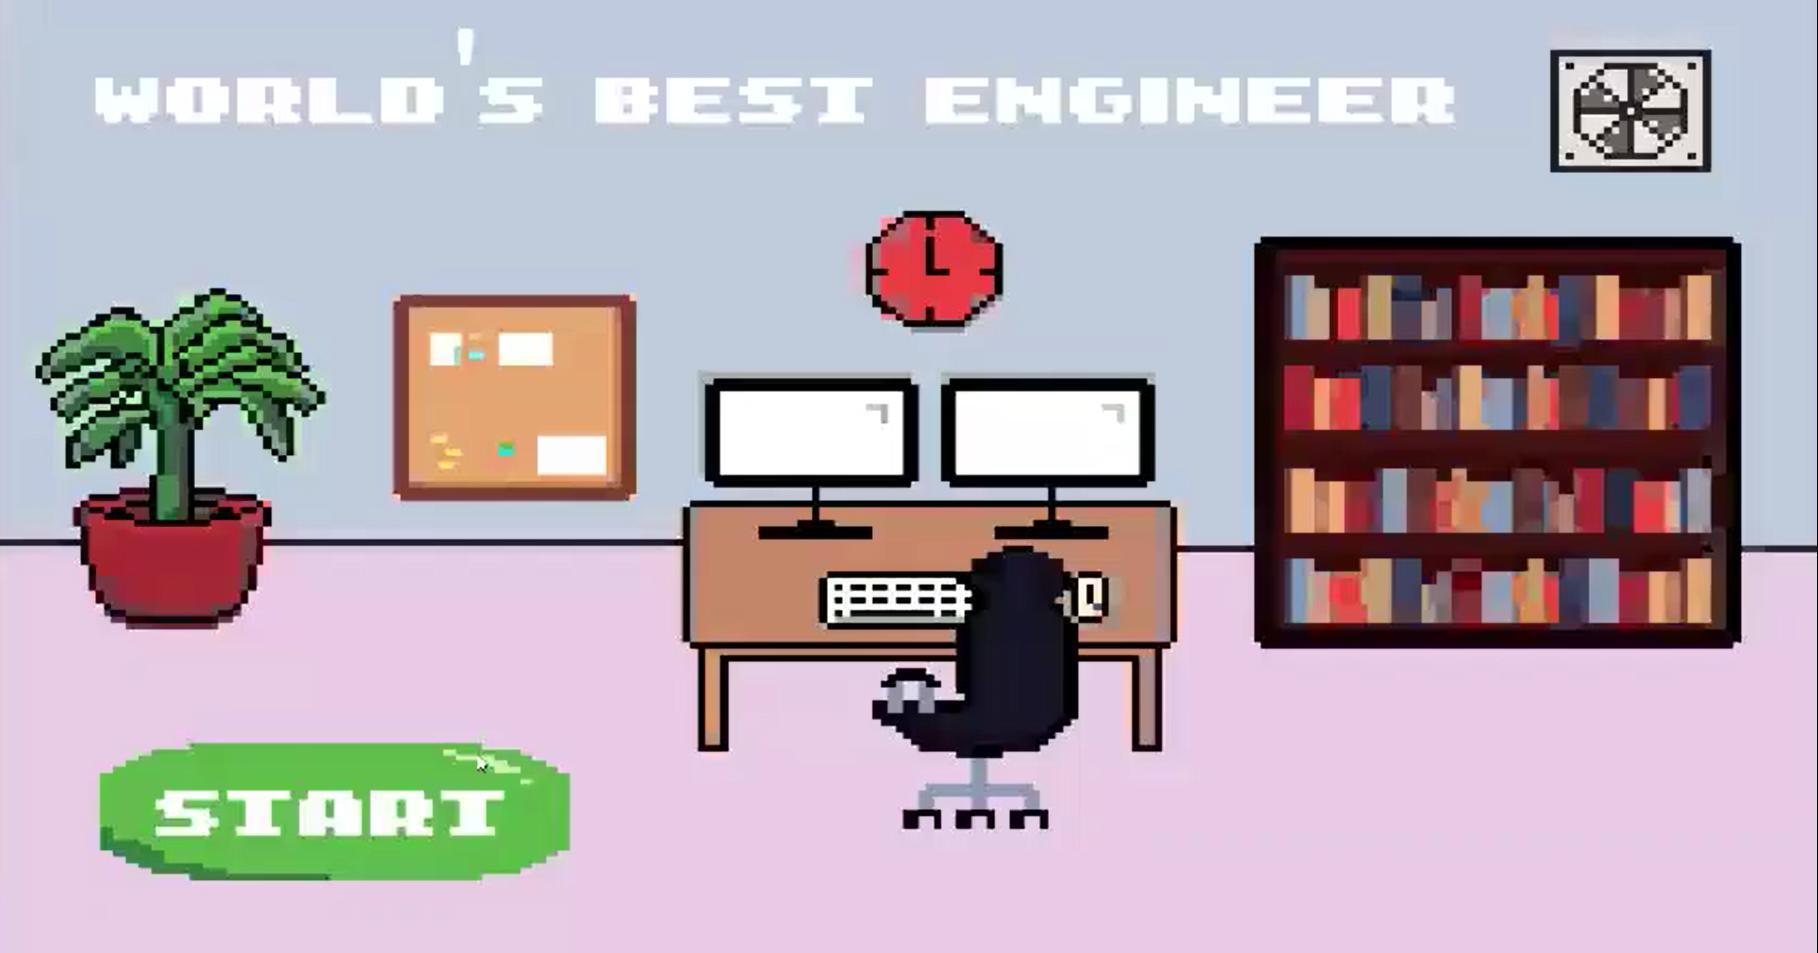 Инженер из компьютерной игры. The World’s best Engineer. World best engineer